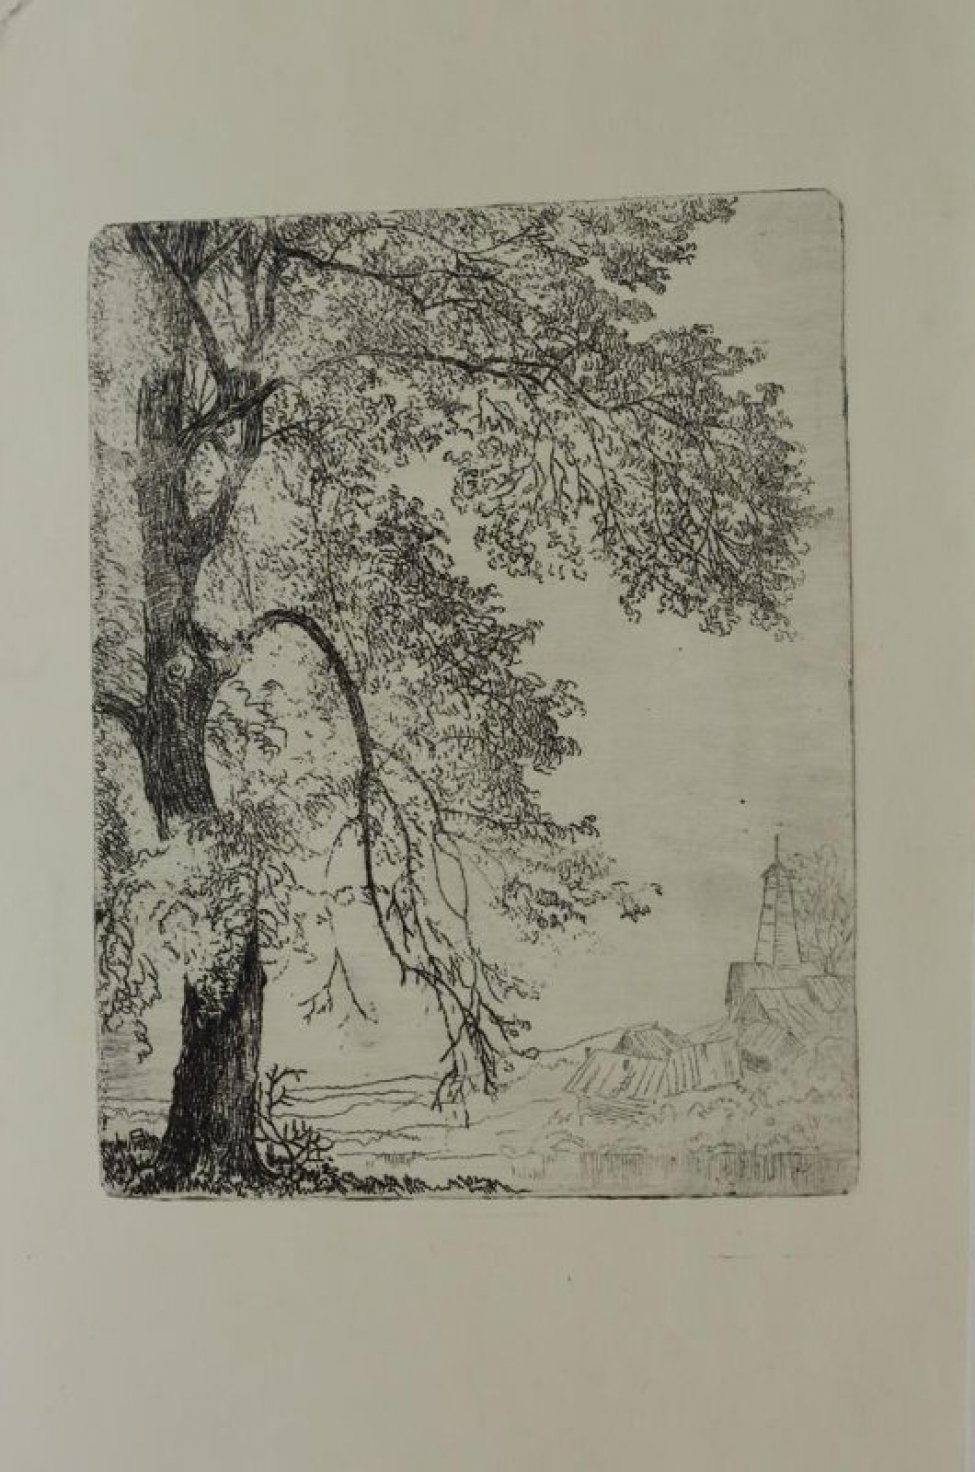 На первом плане слева изображено дерево с густой листвой и длинными, почти до земли, нижними ветками, фрагментированное верхним и левым краем изображения. На дальнем плане справа деревенский пейзаж с пожарной каланчой.